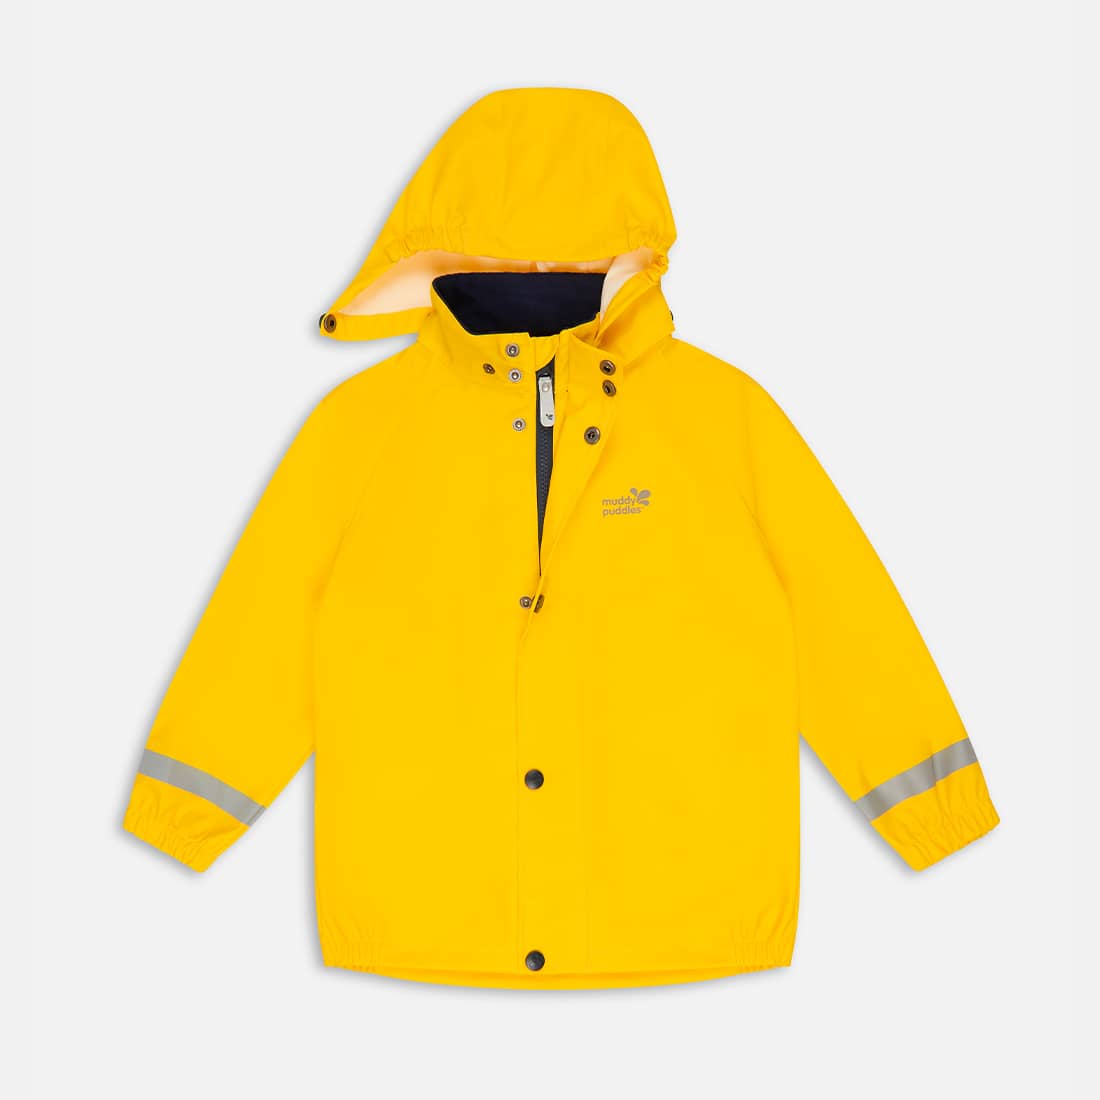 Rainy Day Jacket Yellow Recycled